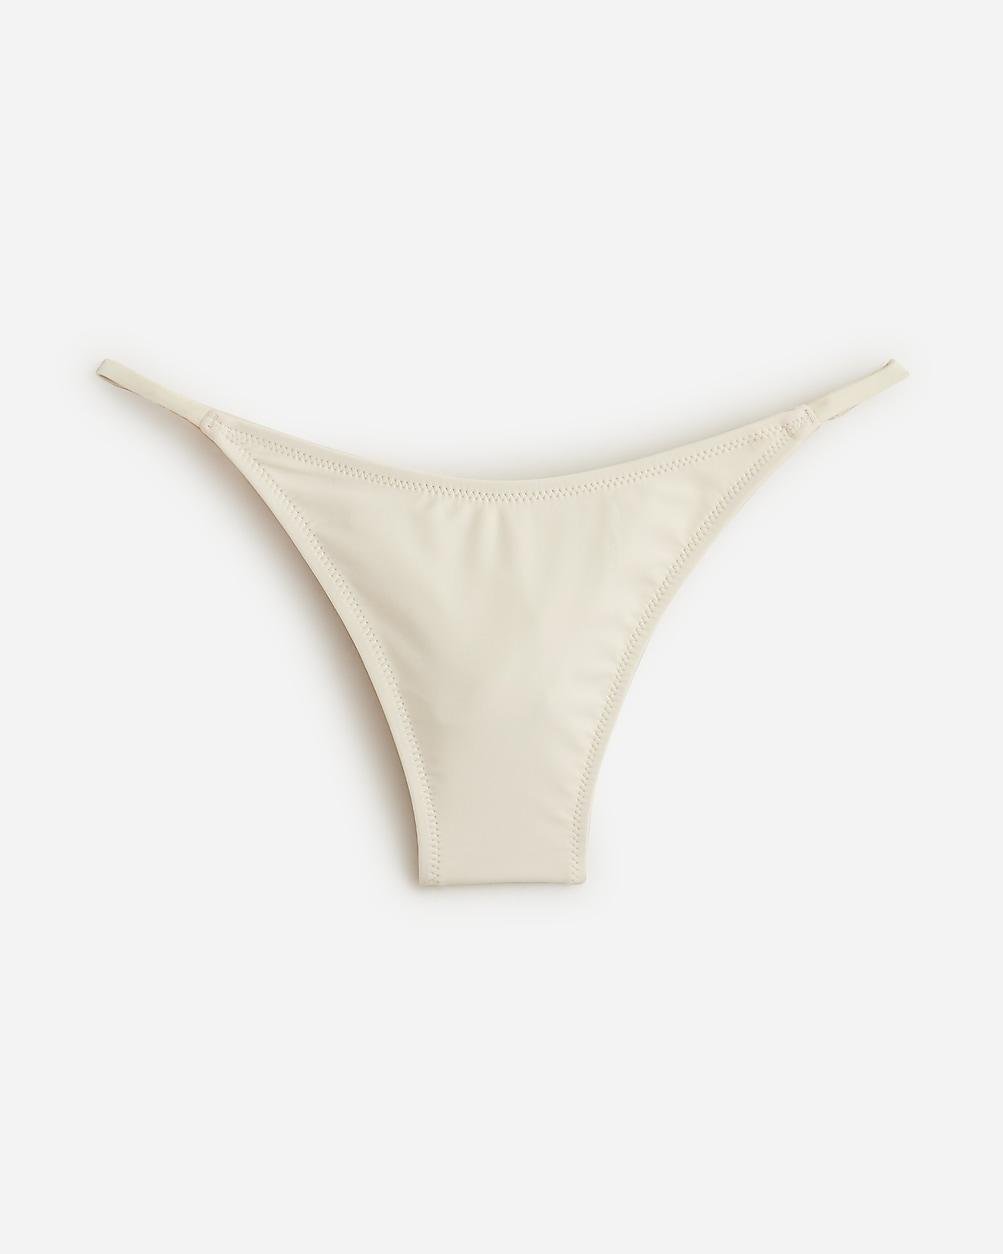 '90s no-tie string bikini bottom by J.CREW